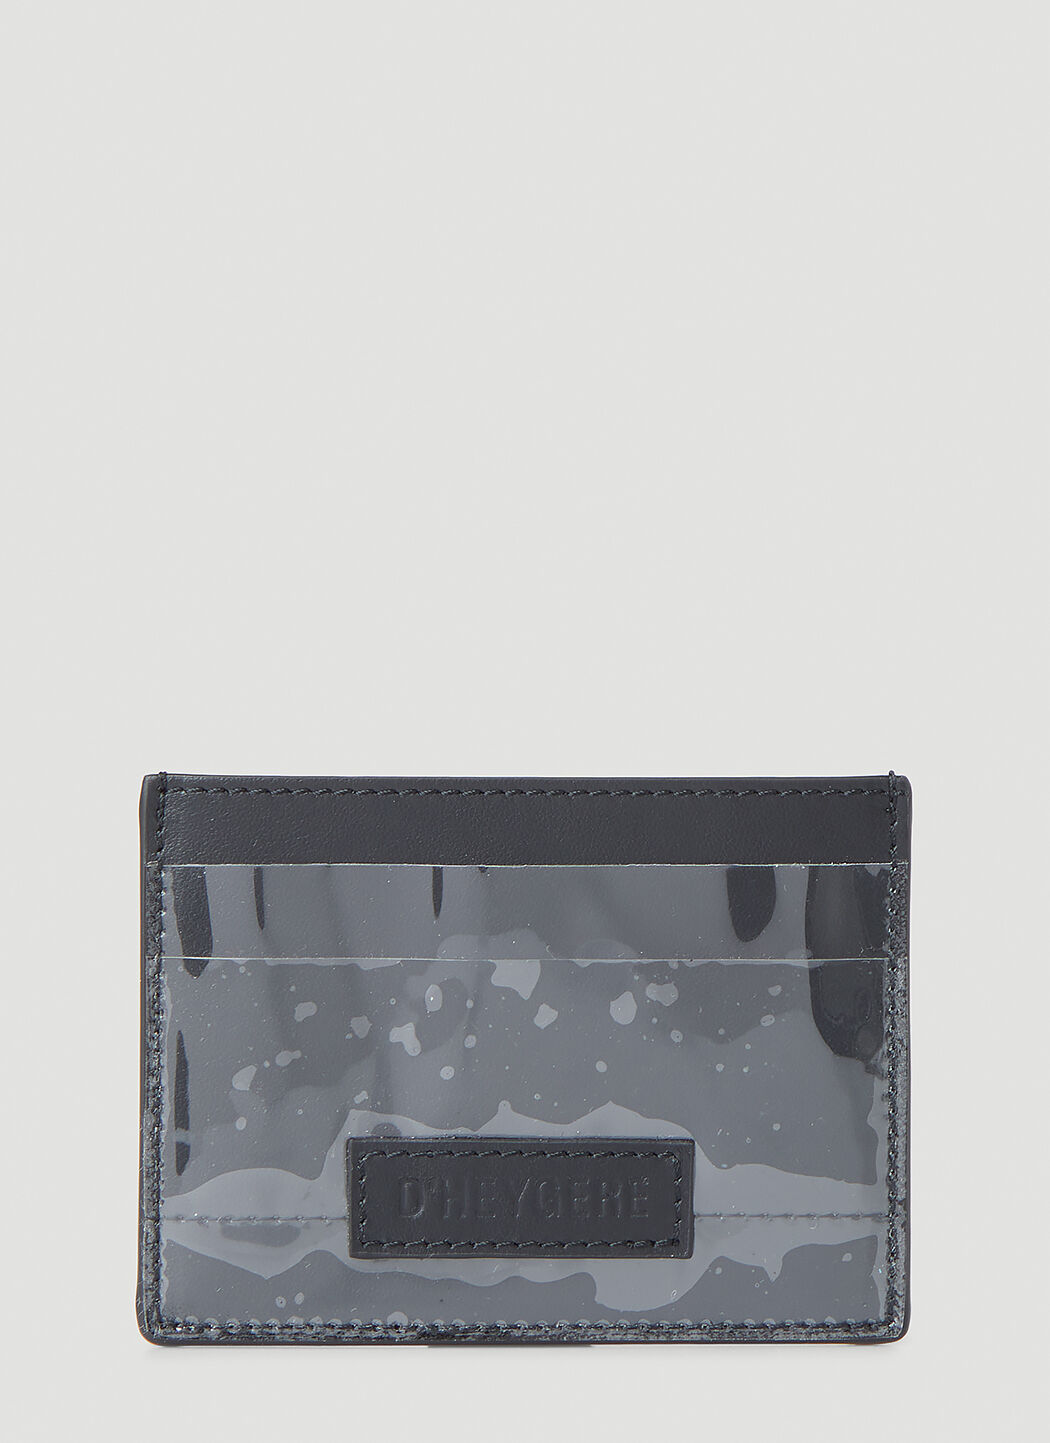 Balenciaga 透明卡包 黑色 bal0154051